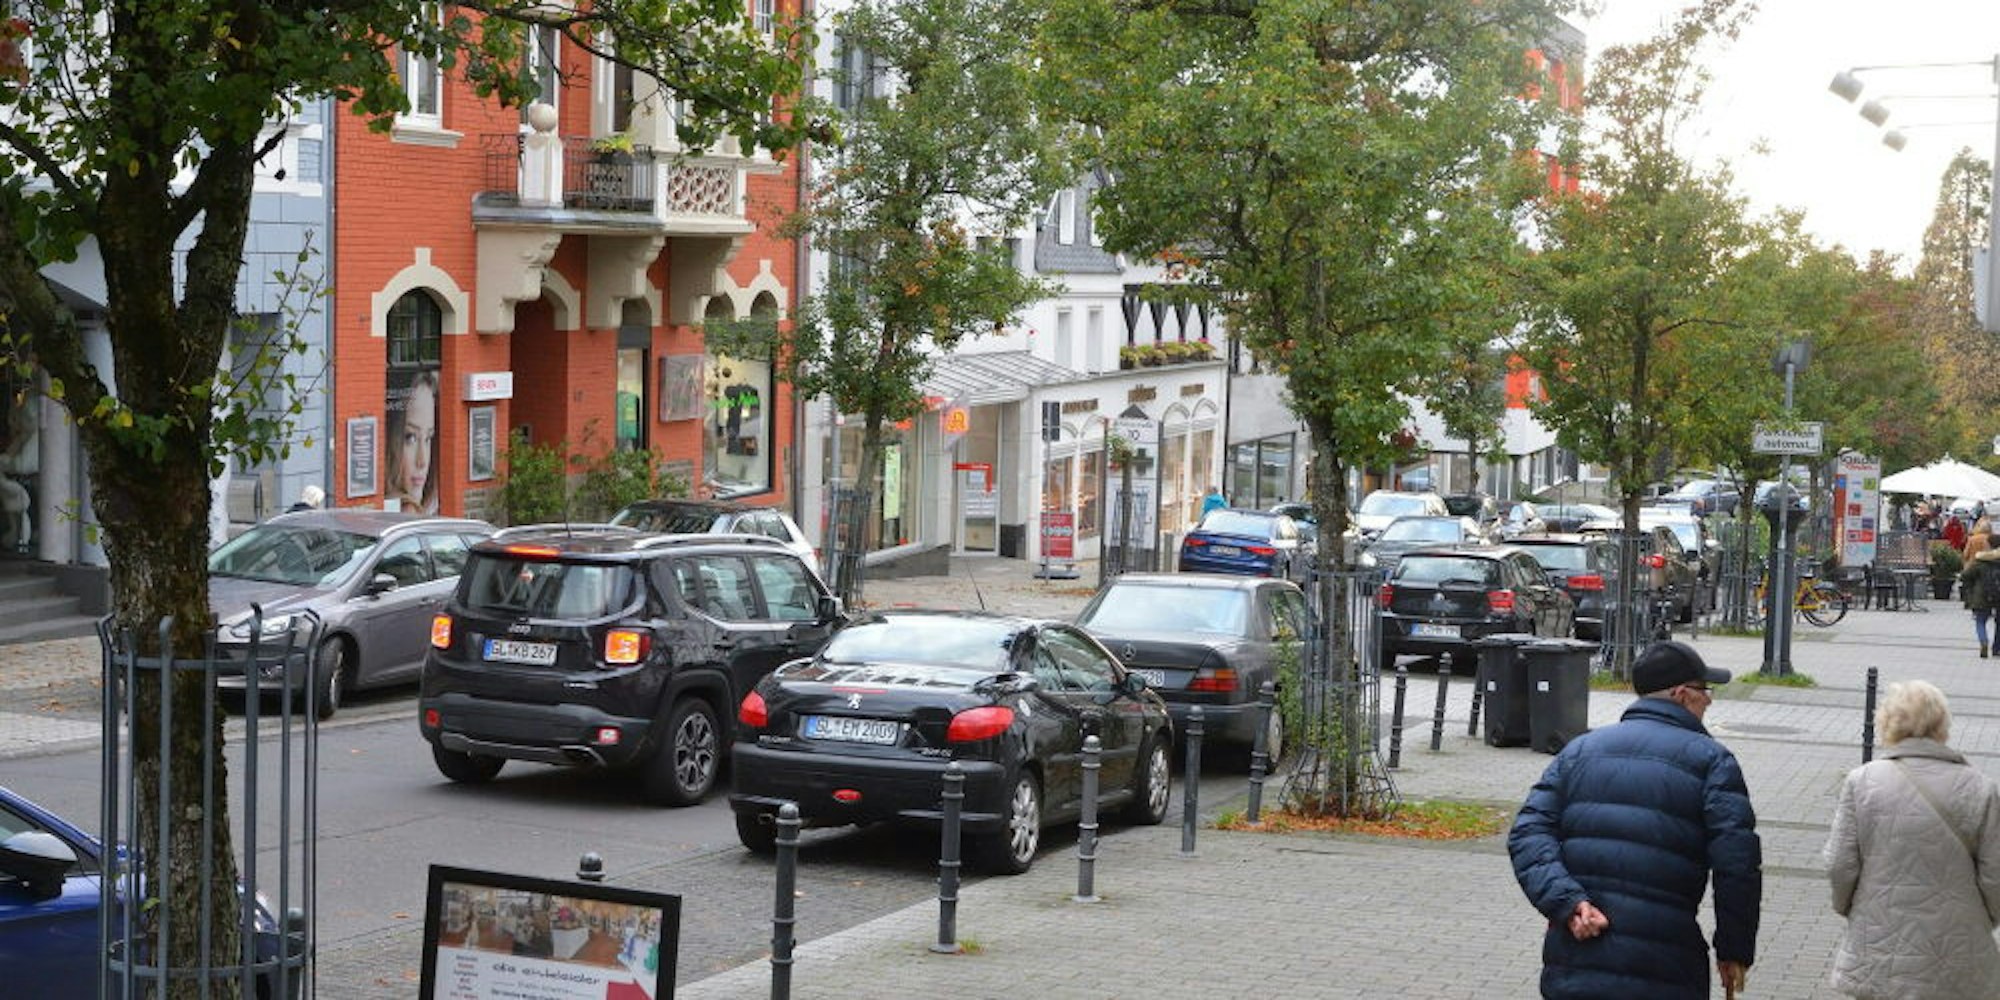 In allen Stadtteilen (wie hier in Bensberg) ist das Kurzparken für 15 Minuten kostenlos. Die Ampelkoalition sieht dies kritisch.